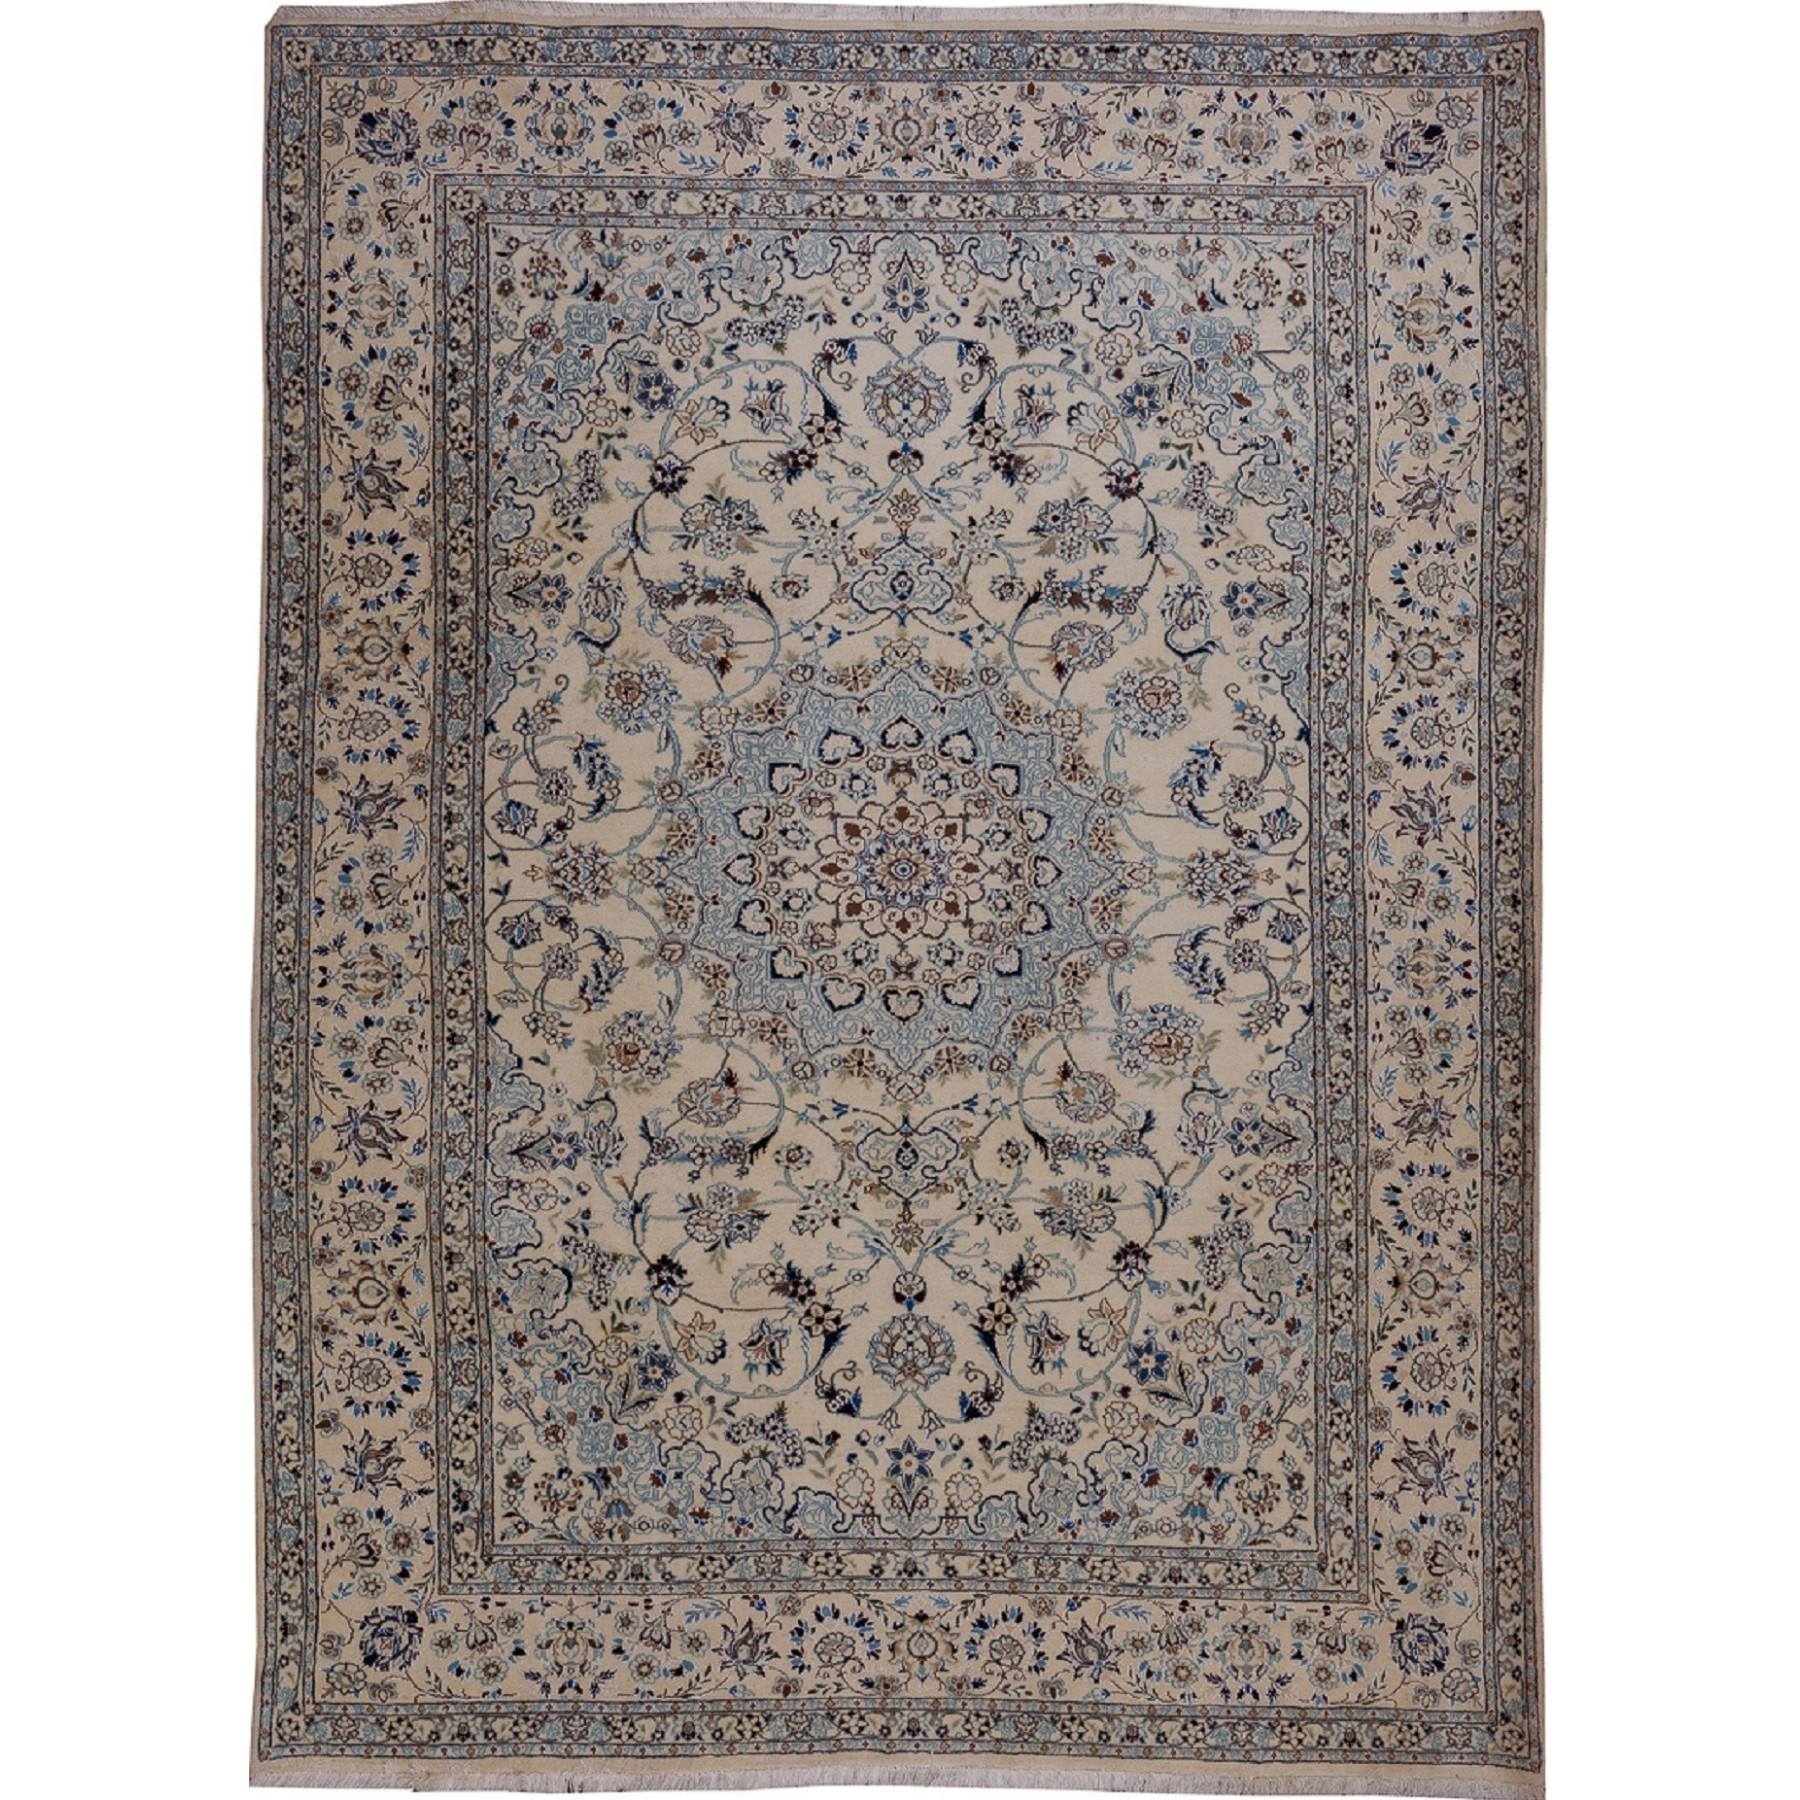 prostokątny dywan ornamentalny w jasnych odcieniach